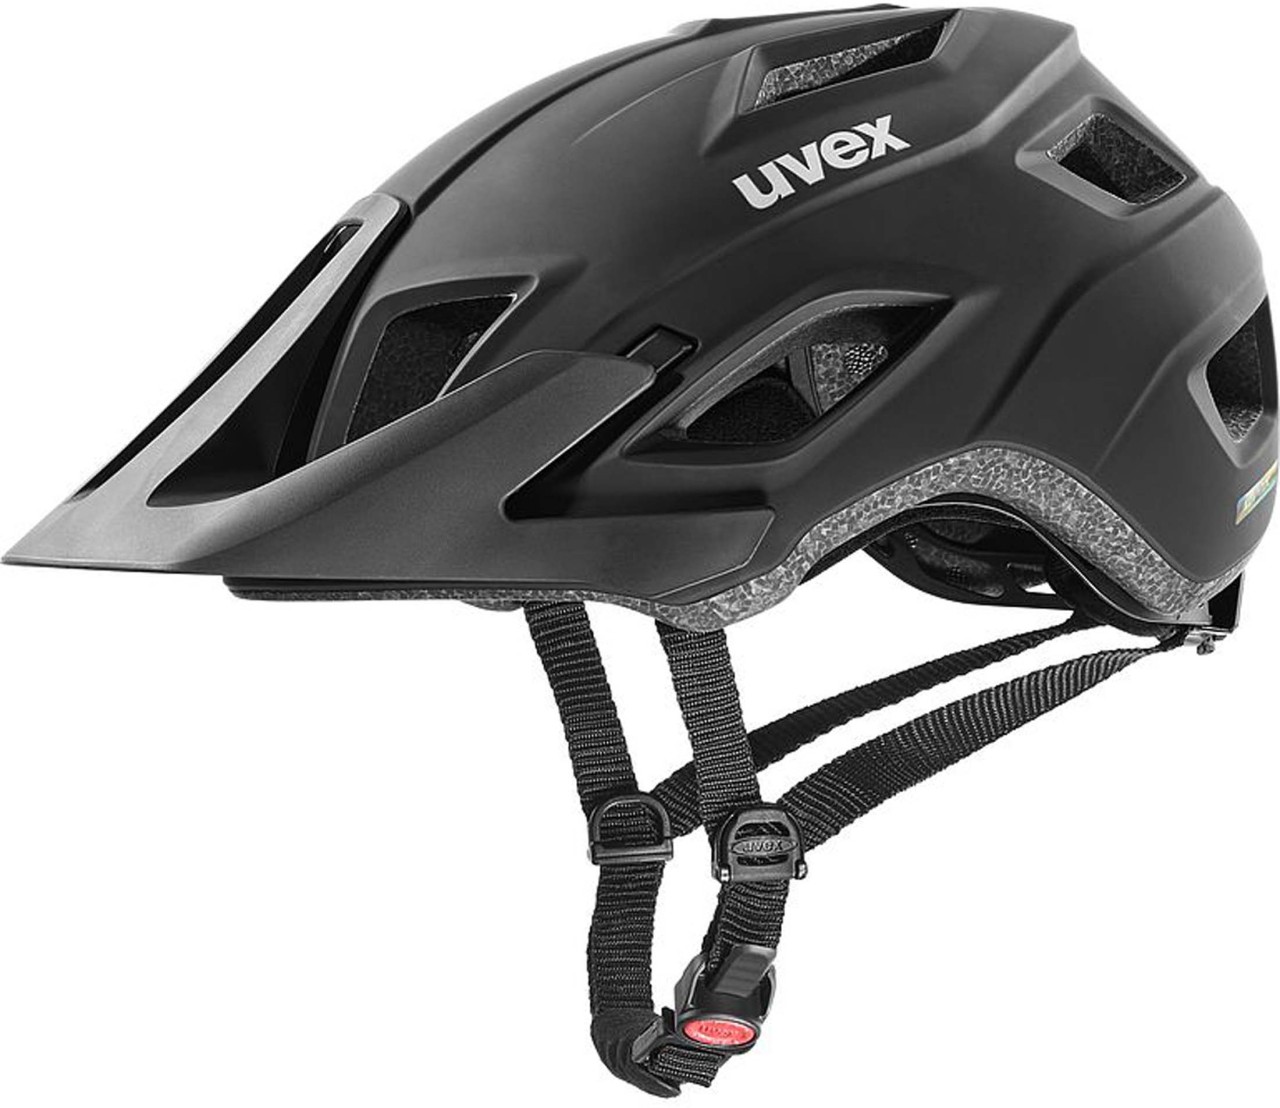 Uvex access MTB bike helmet